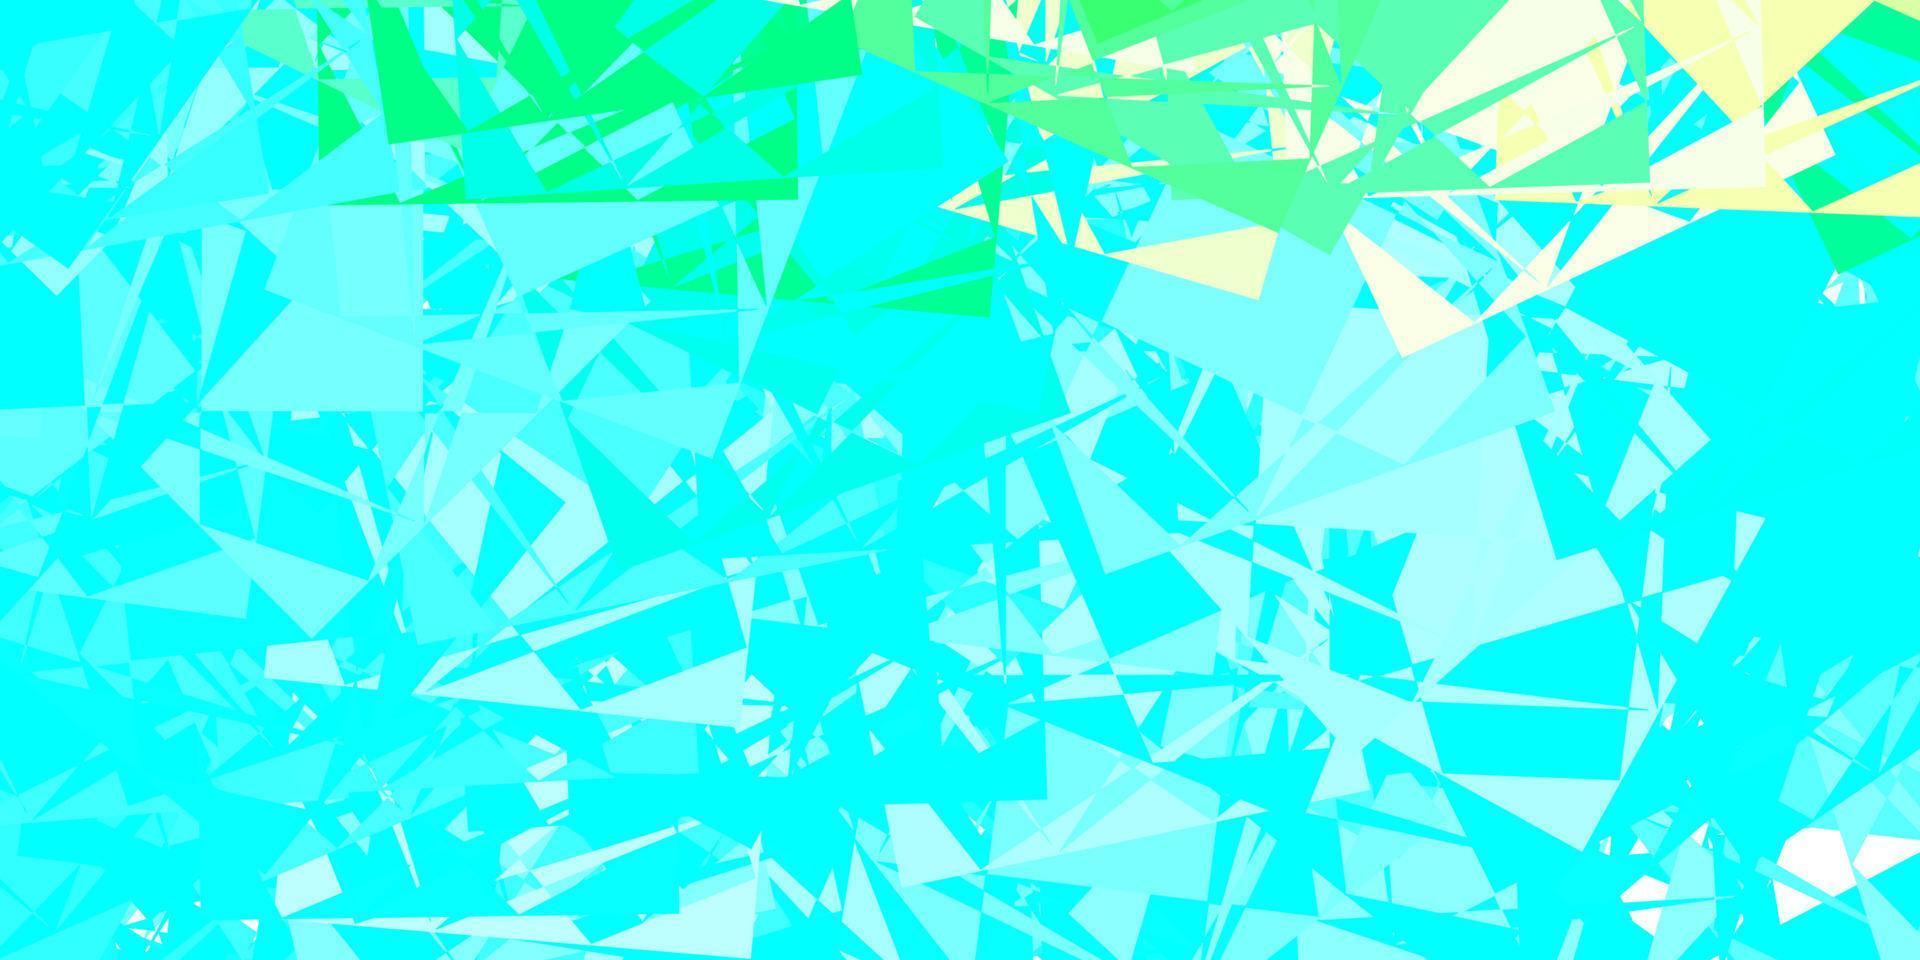 sfondo vettoriale azzurro, verde con forme caotiche.